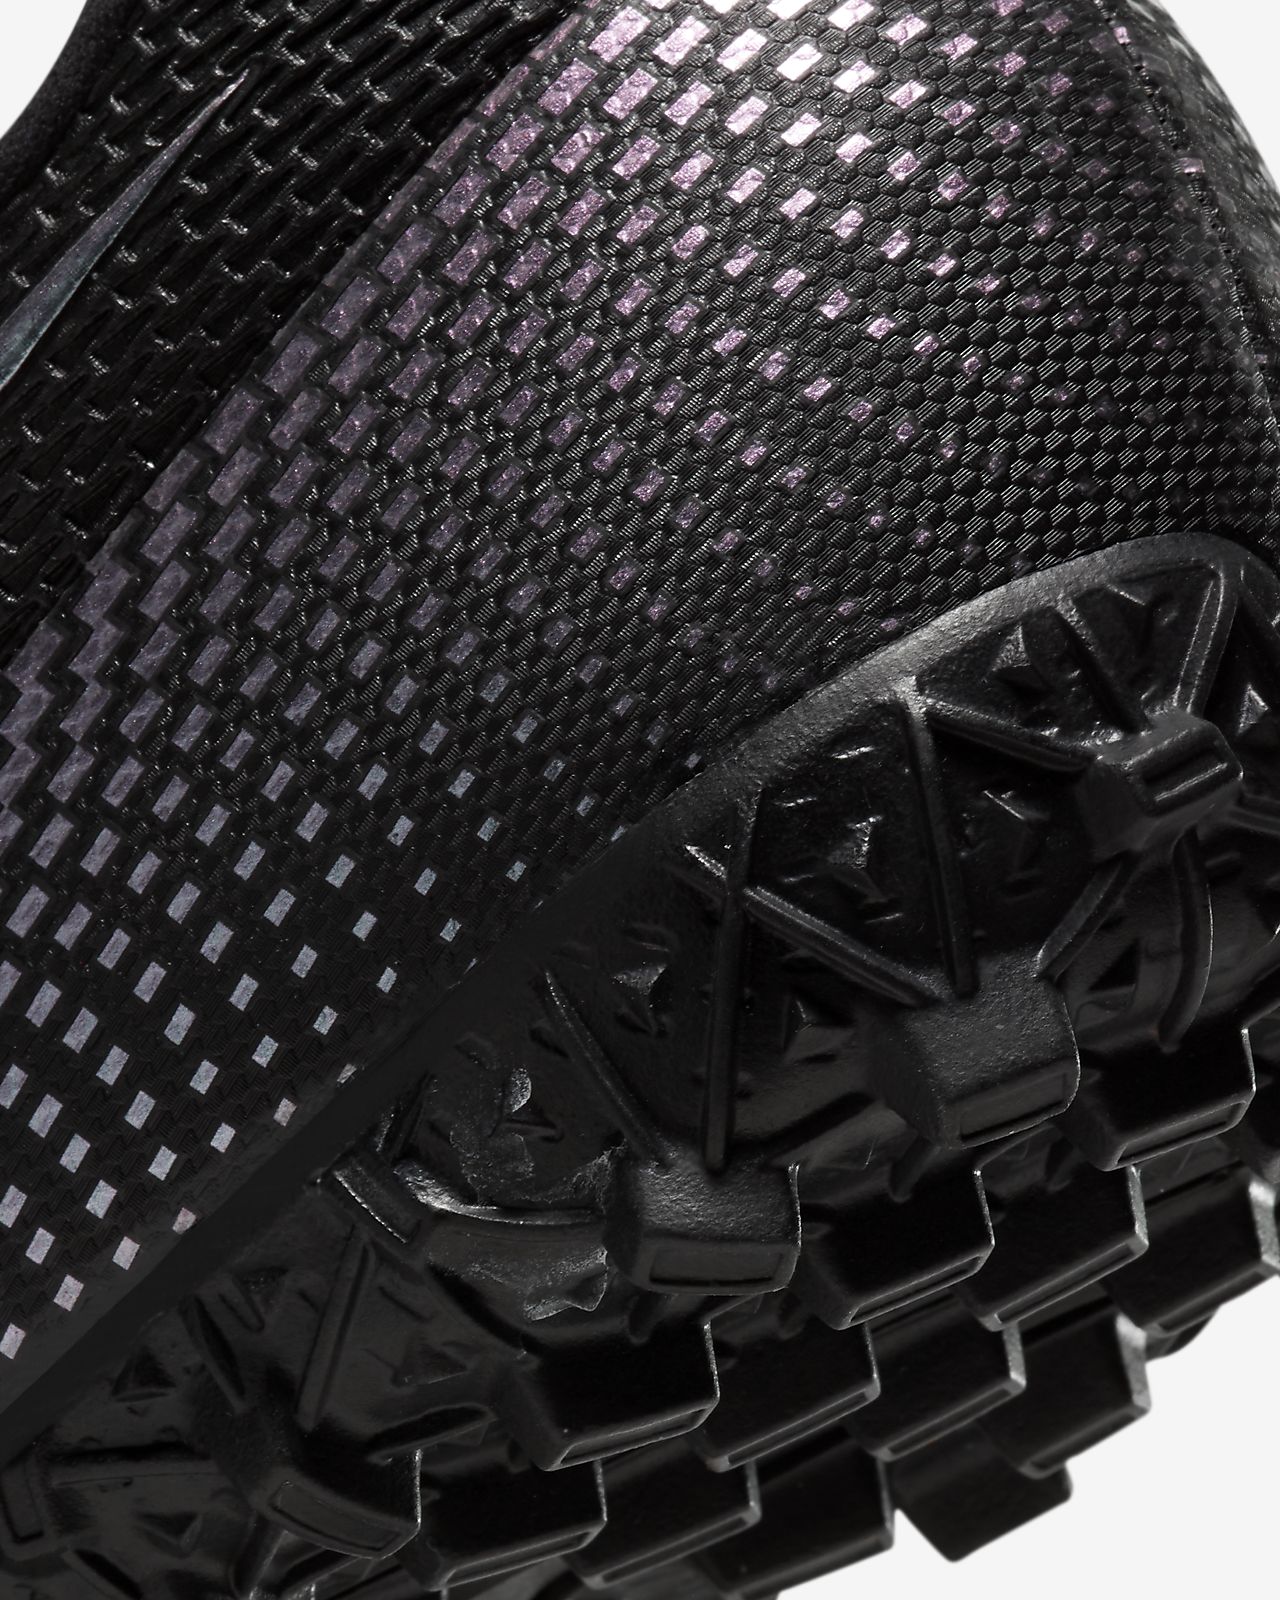 Nike Mercurial Vapor XIII in Pitch Tech Craft Blog.